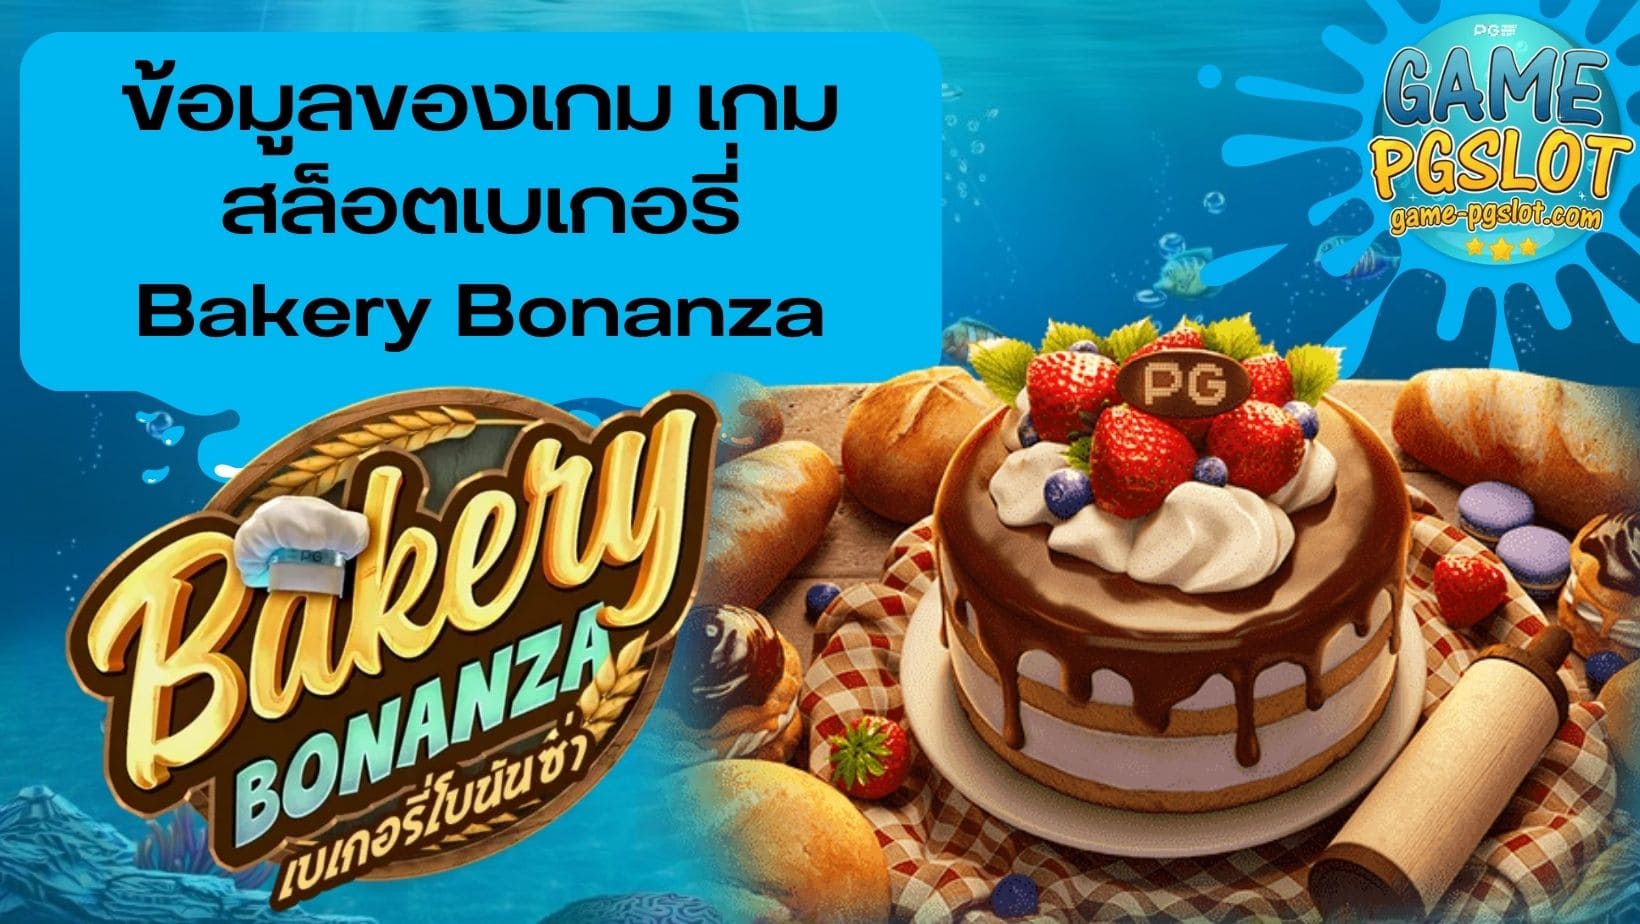 ข้อมูลของเกม เกมสล็อตเบเกอรี่ Bakery Bonanza